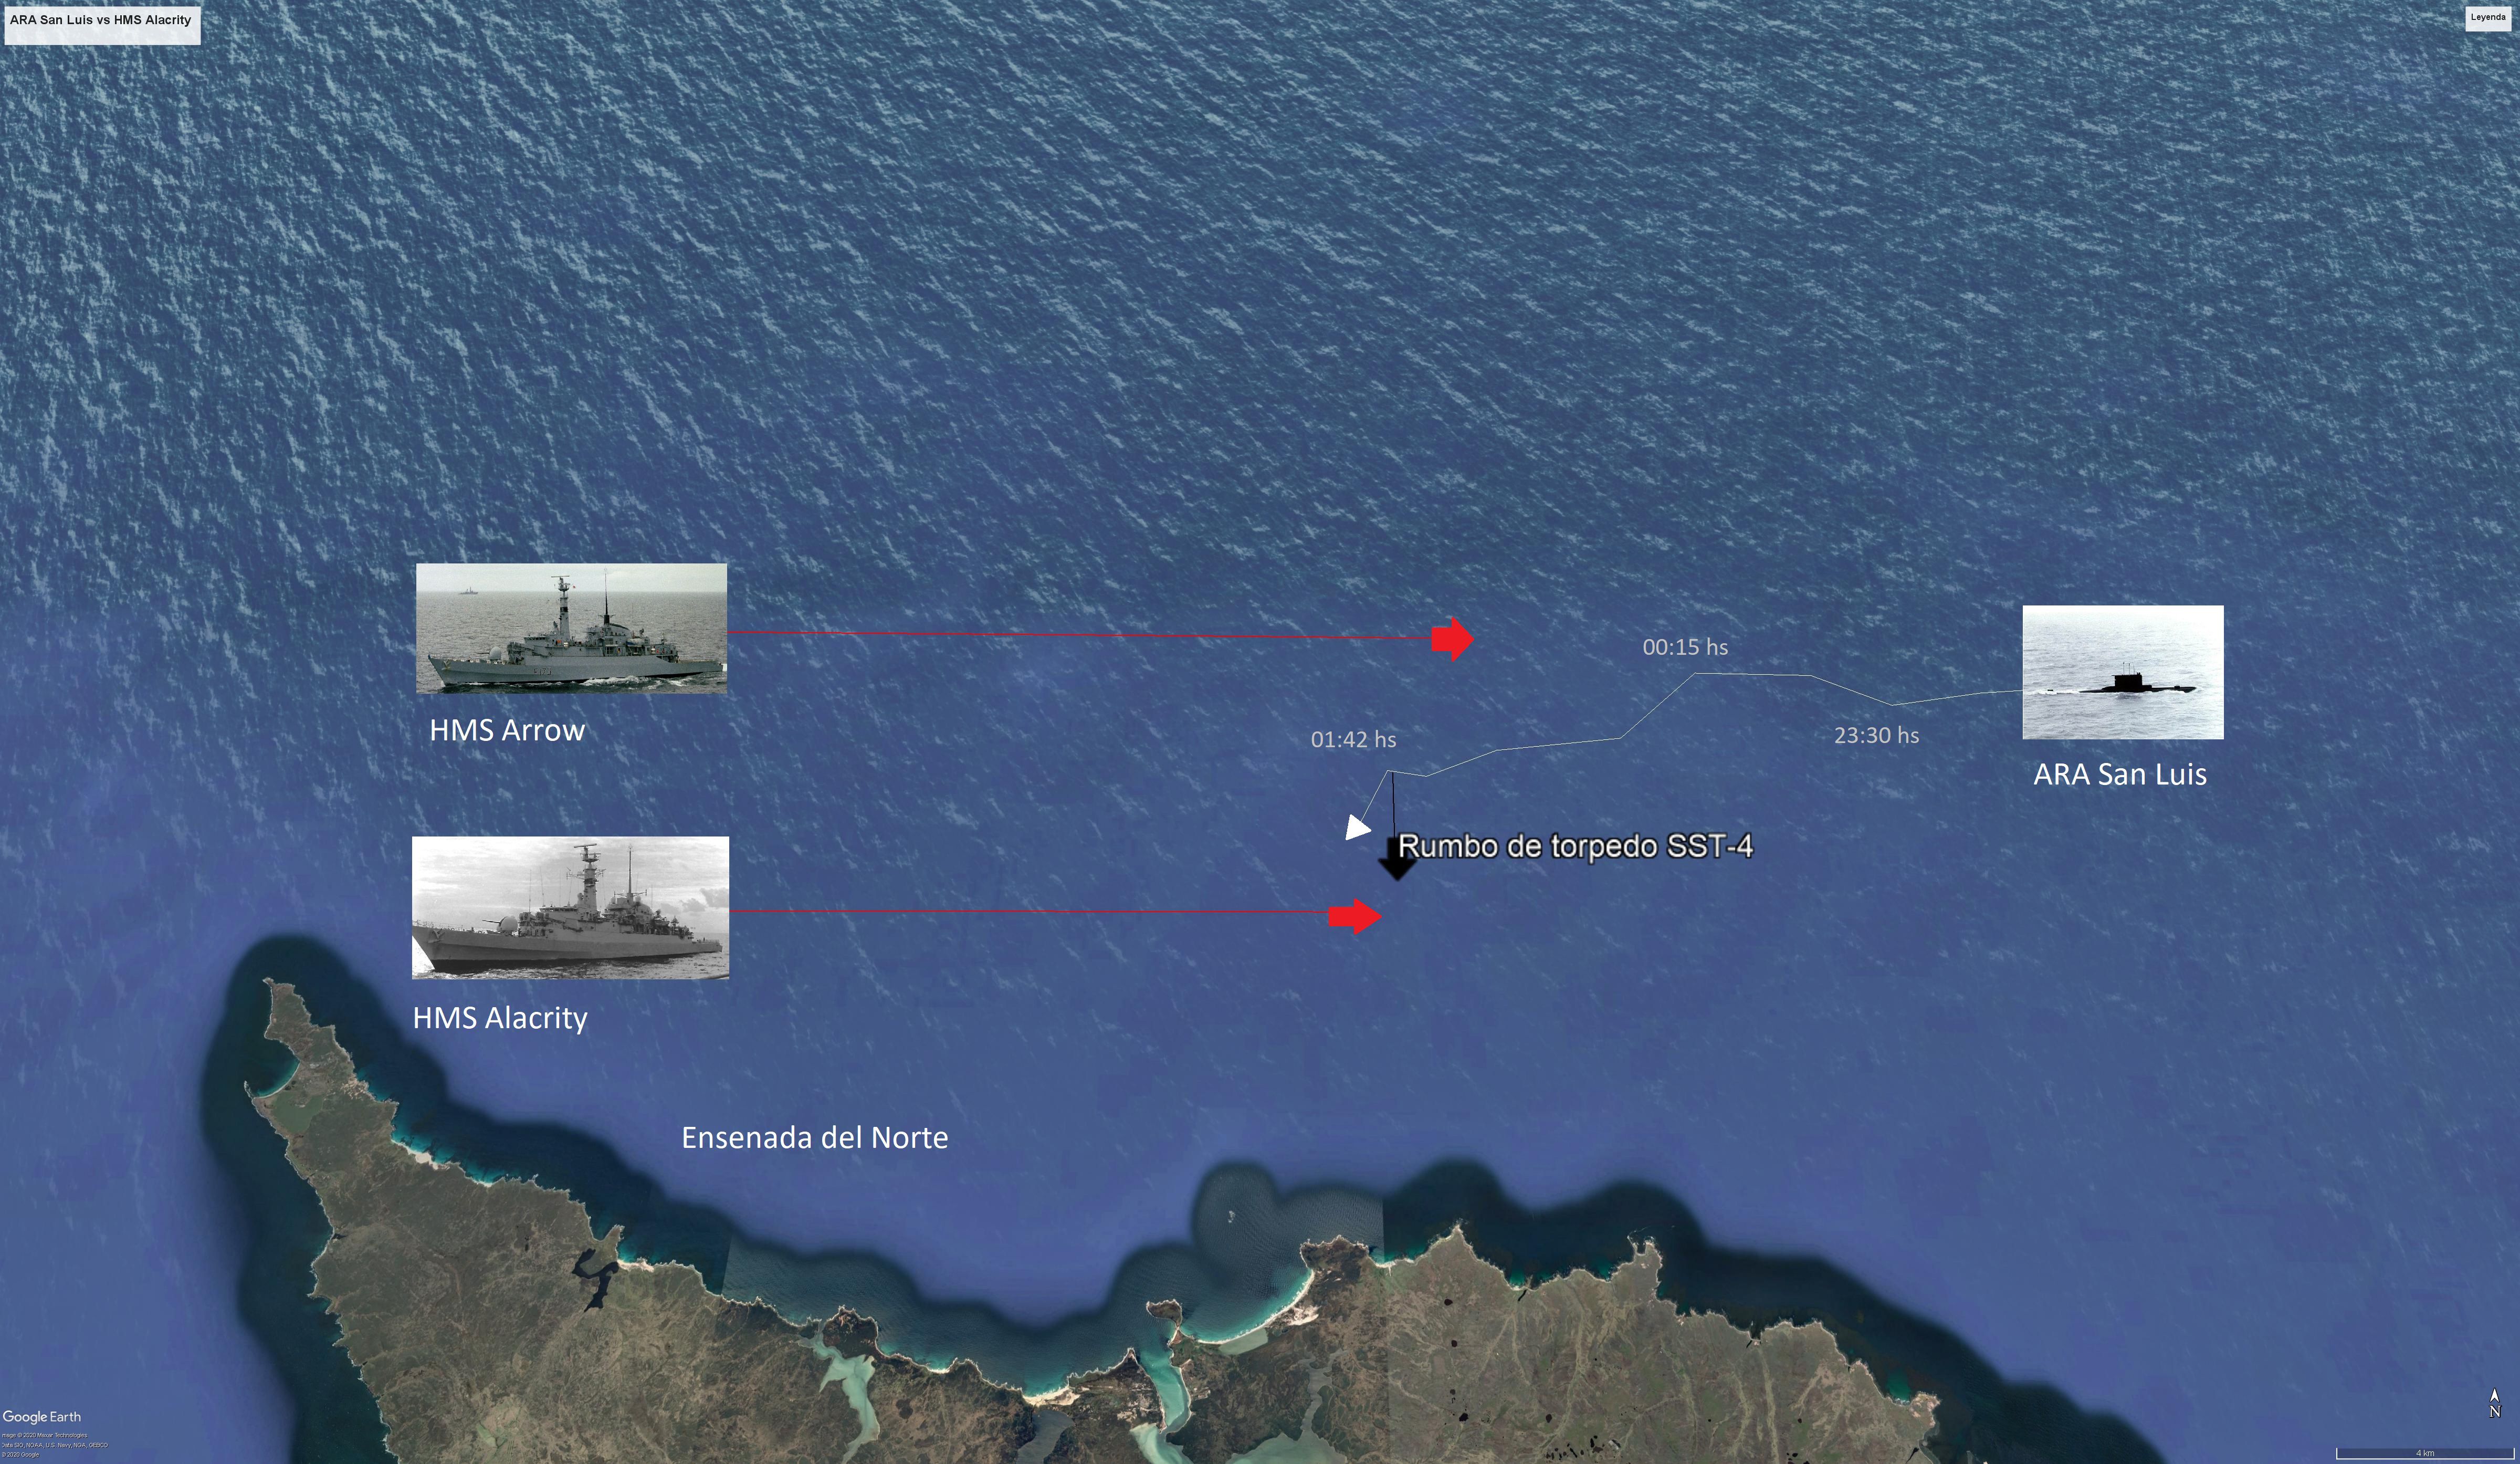 Esquema del ataque del submarino ARA San Luis a la fragata HMS Alacrity, el norte de Malvinas en las primeras horas del 11 de mayo de 1982.